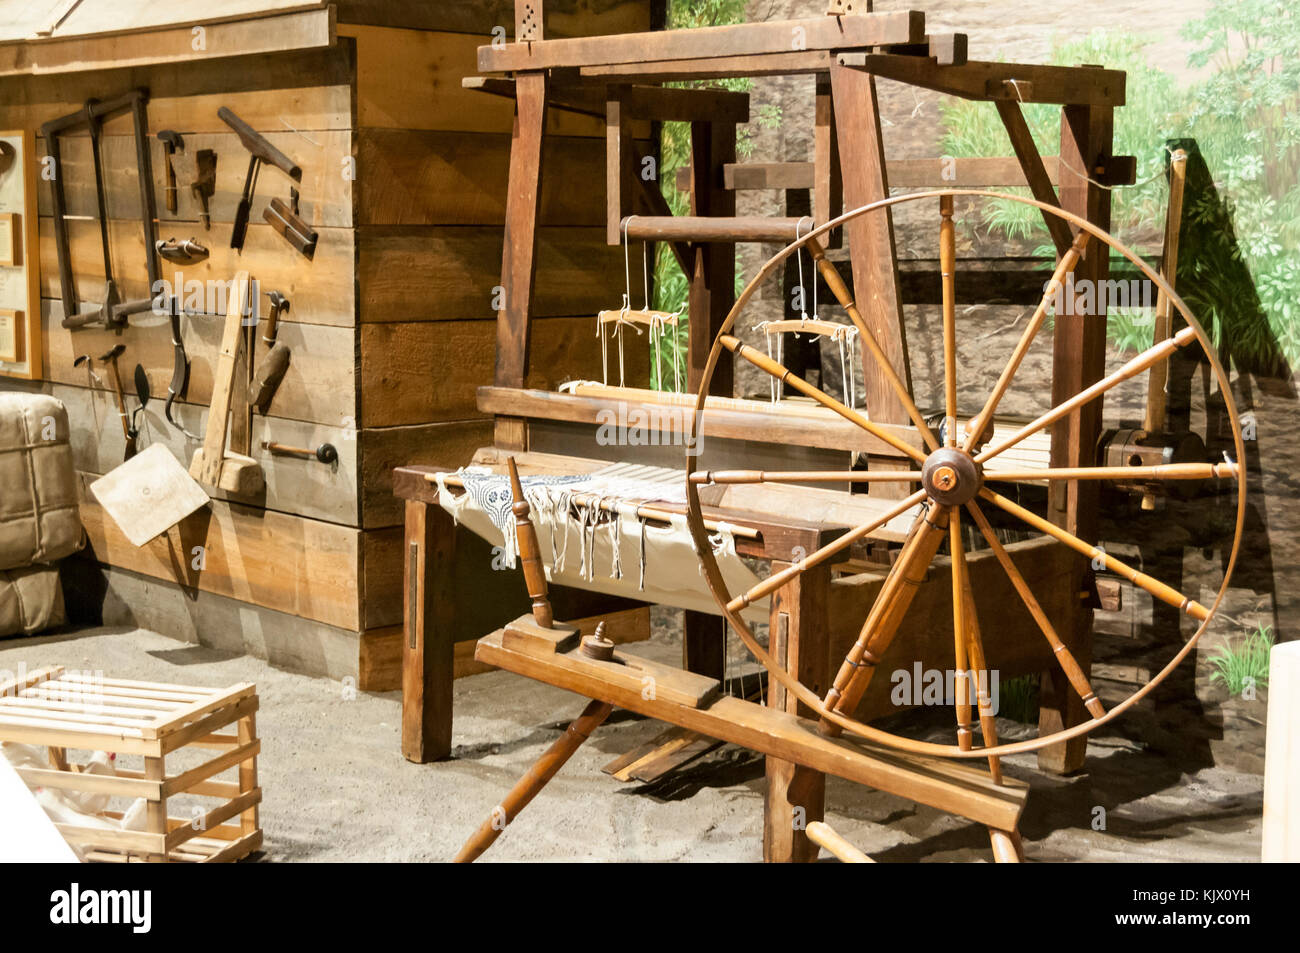 La exhibición del museo de un telar, rueda giratoria, y otras herramientas utilizadas por los primeros colonos en Kentucky, EE.UU. Foto de stock